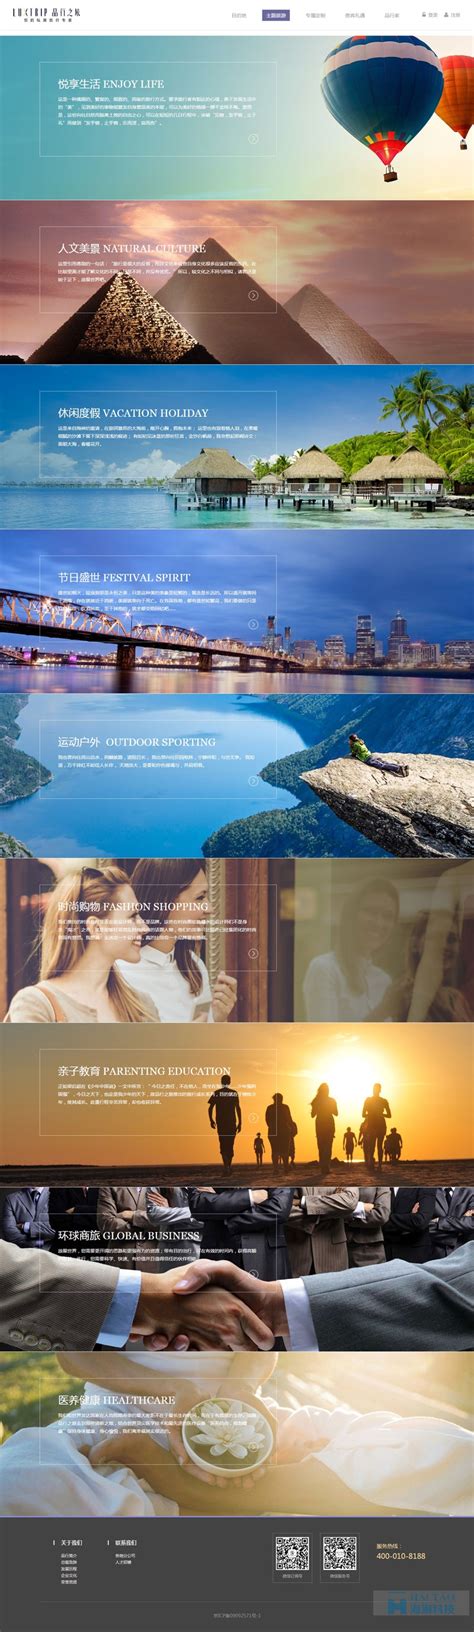 品行之旅旅游网站建设,上海旅游网站设计,旅游网站建设方案-海淘科技